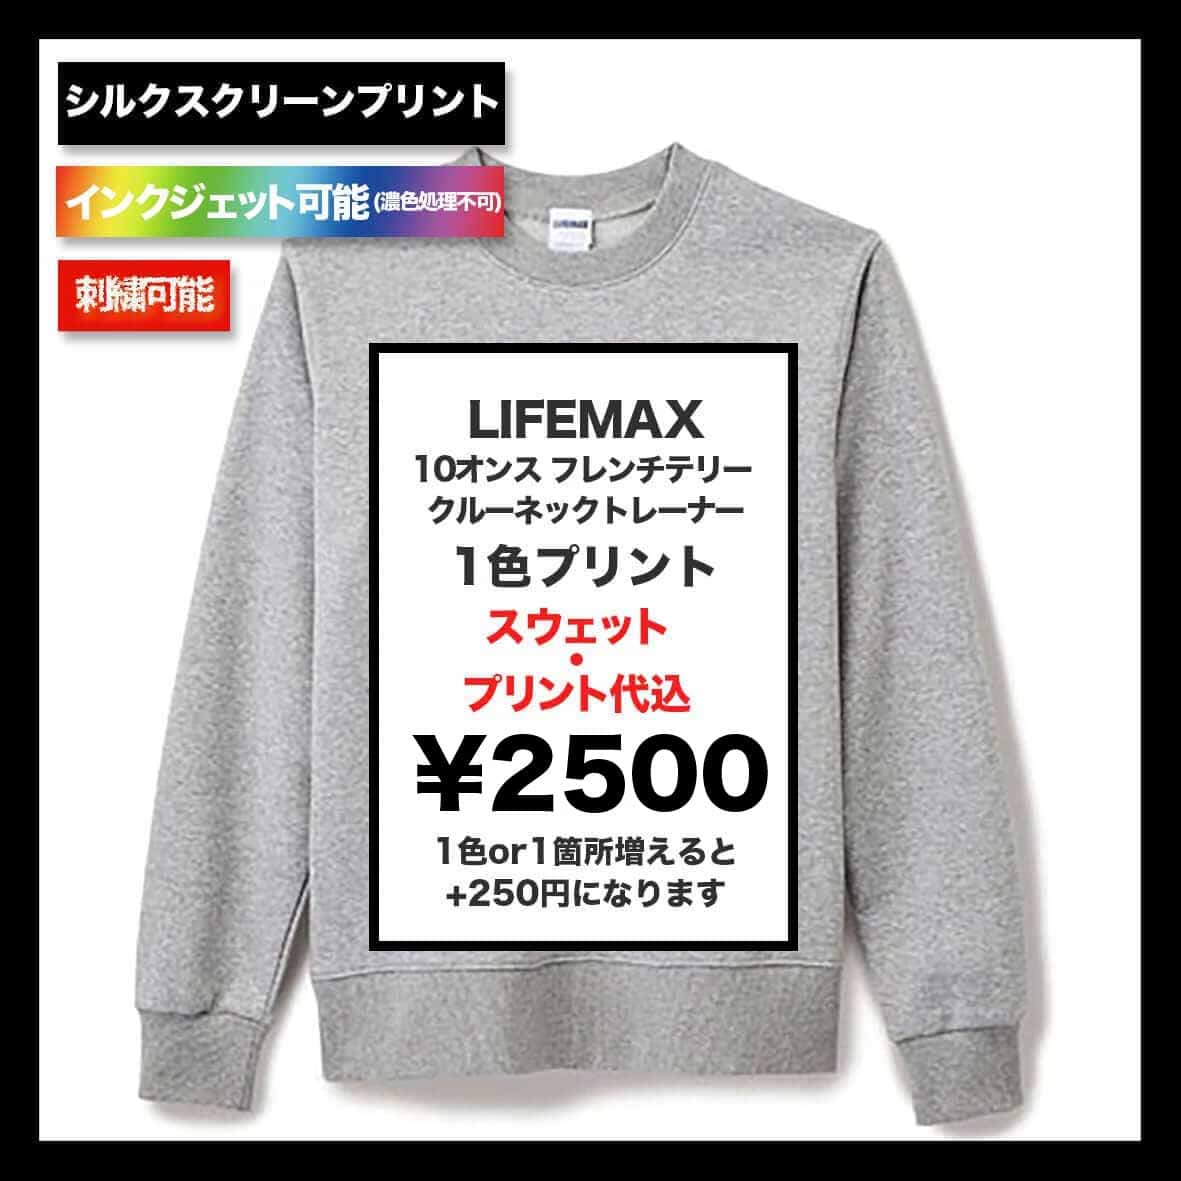 LIFEMAX ライフマックス 10.0 oz フレンチテリークルーネックトレーナー (品番MS2122)